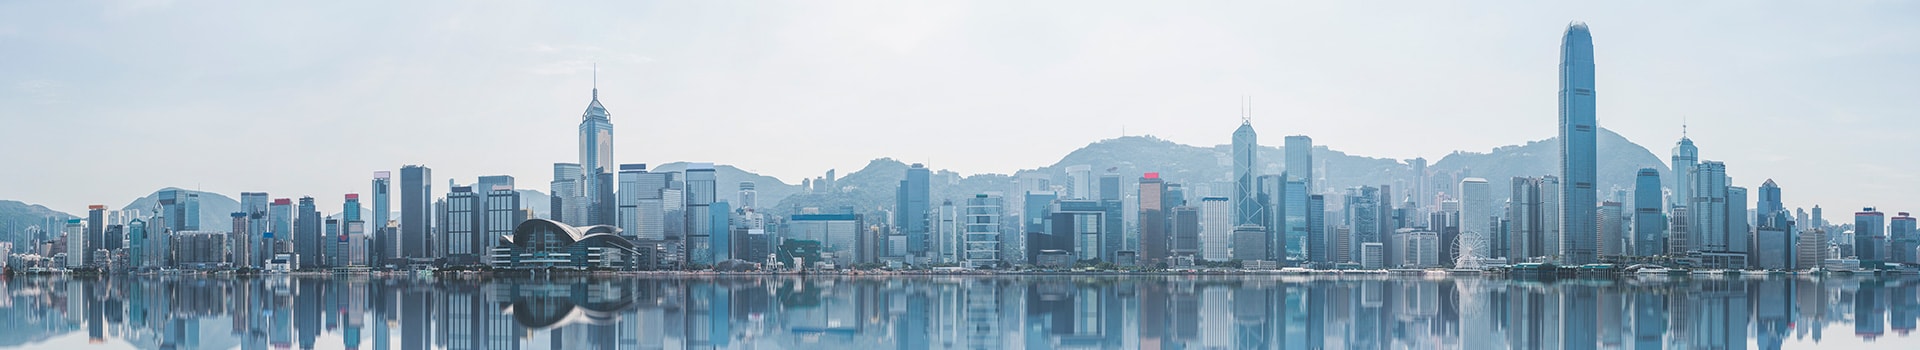 Pekin - Hong kong